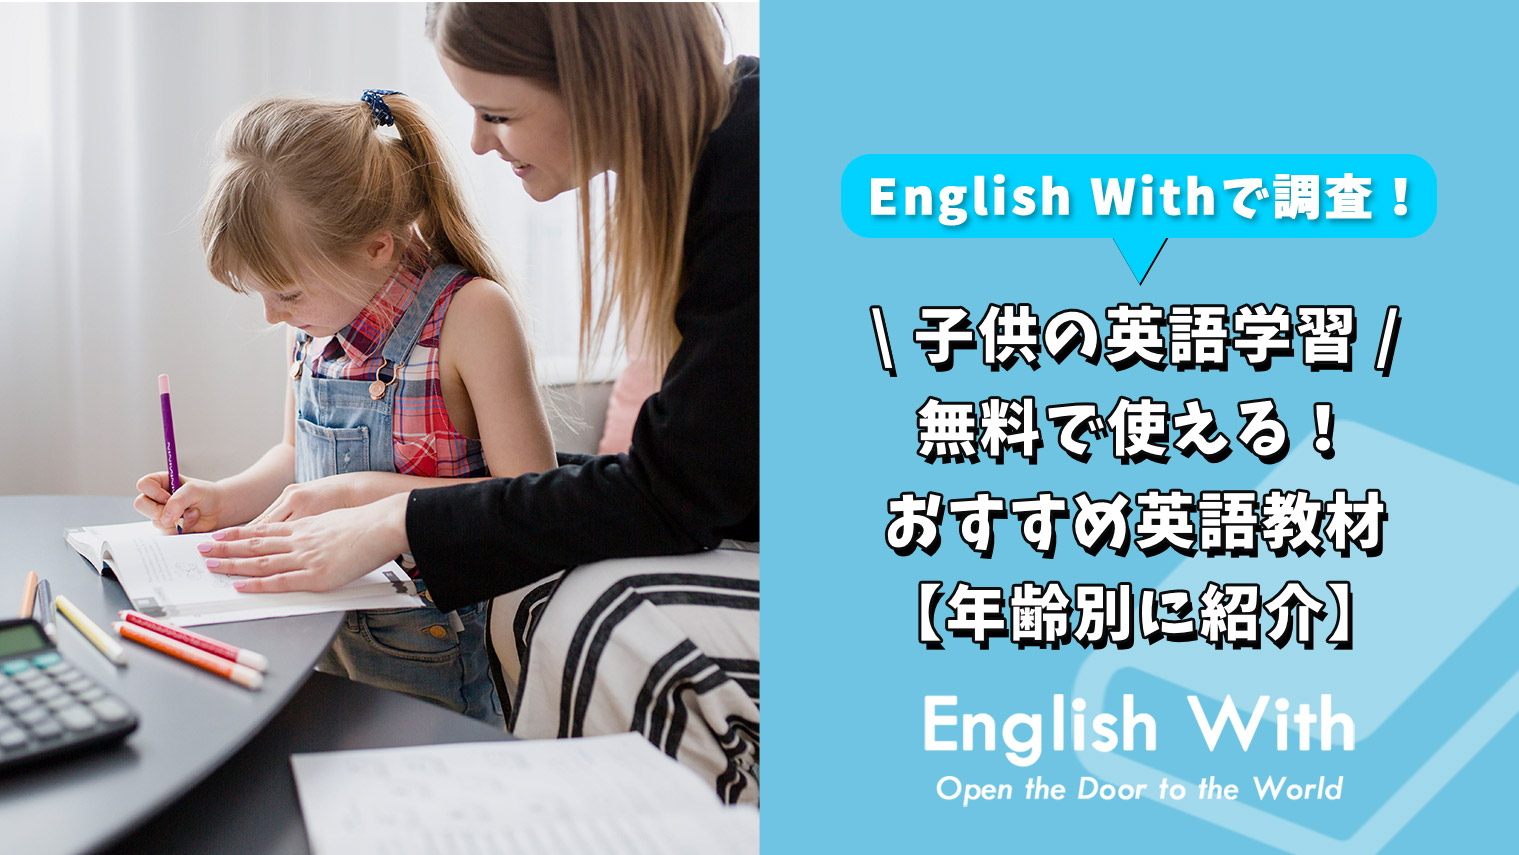 無料で使える 子供向けの英語教材を紹介 年齢別まとめ 英語学習メディアenglish With